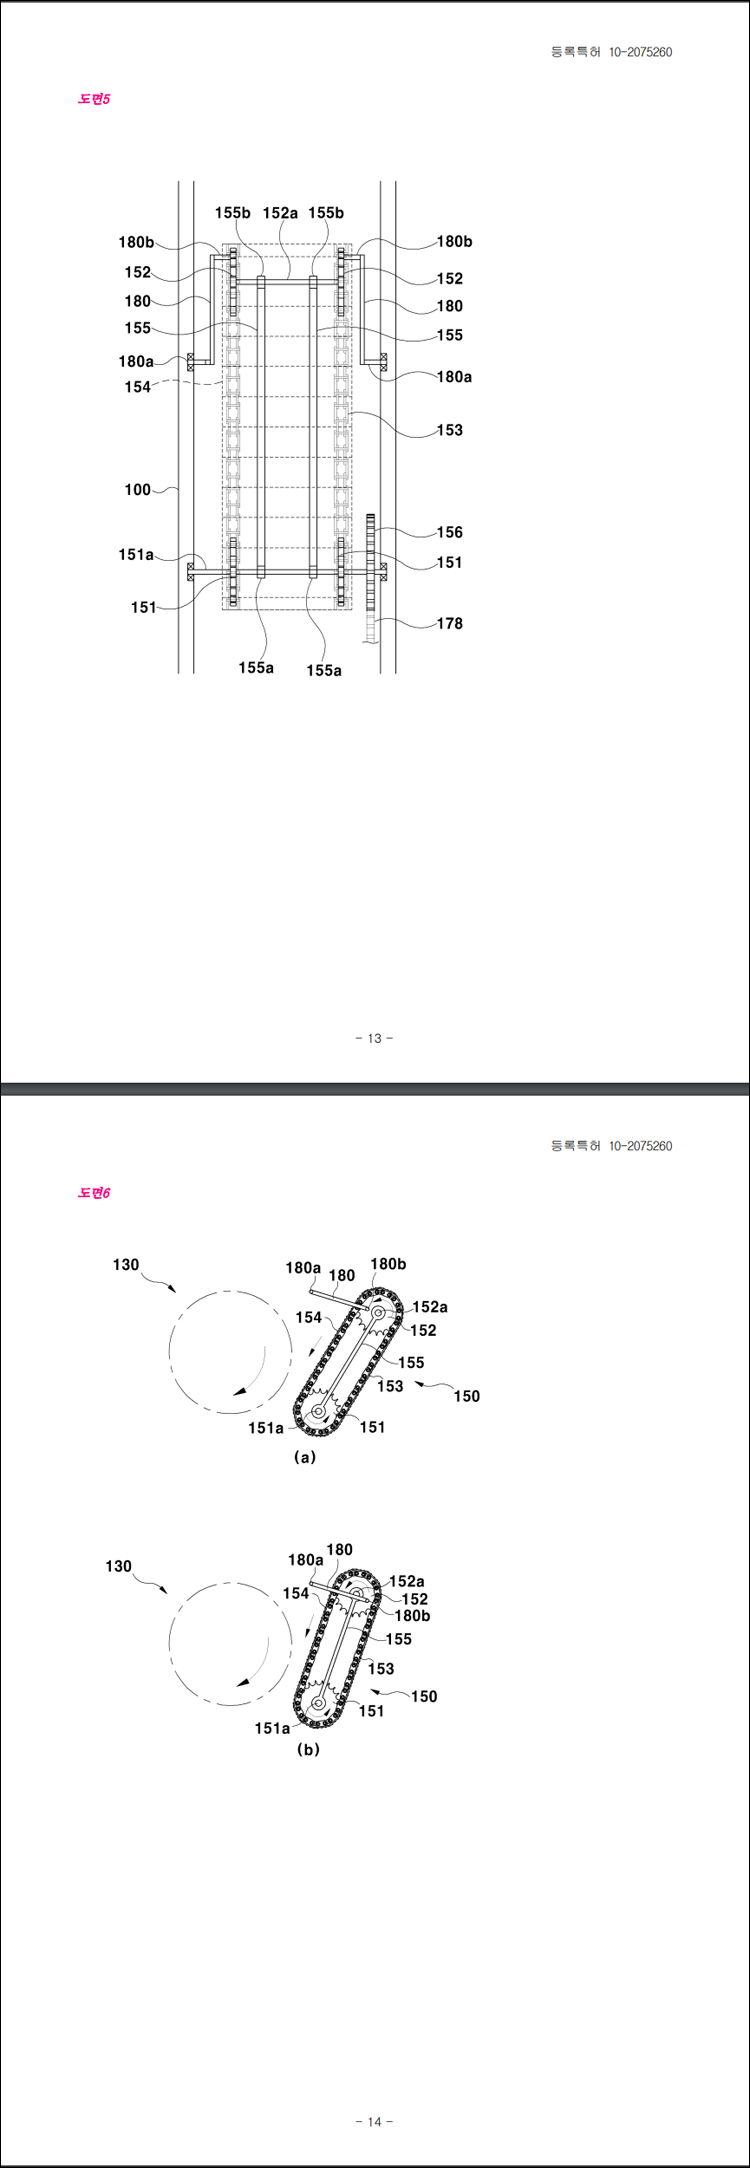 특허 제10-2075260호(마늘 분쇄기, 김윤식)